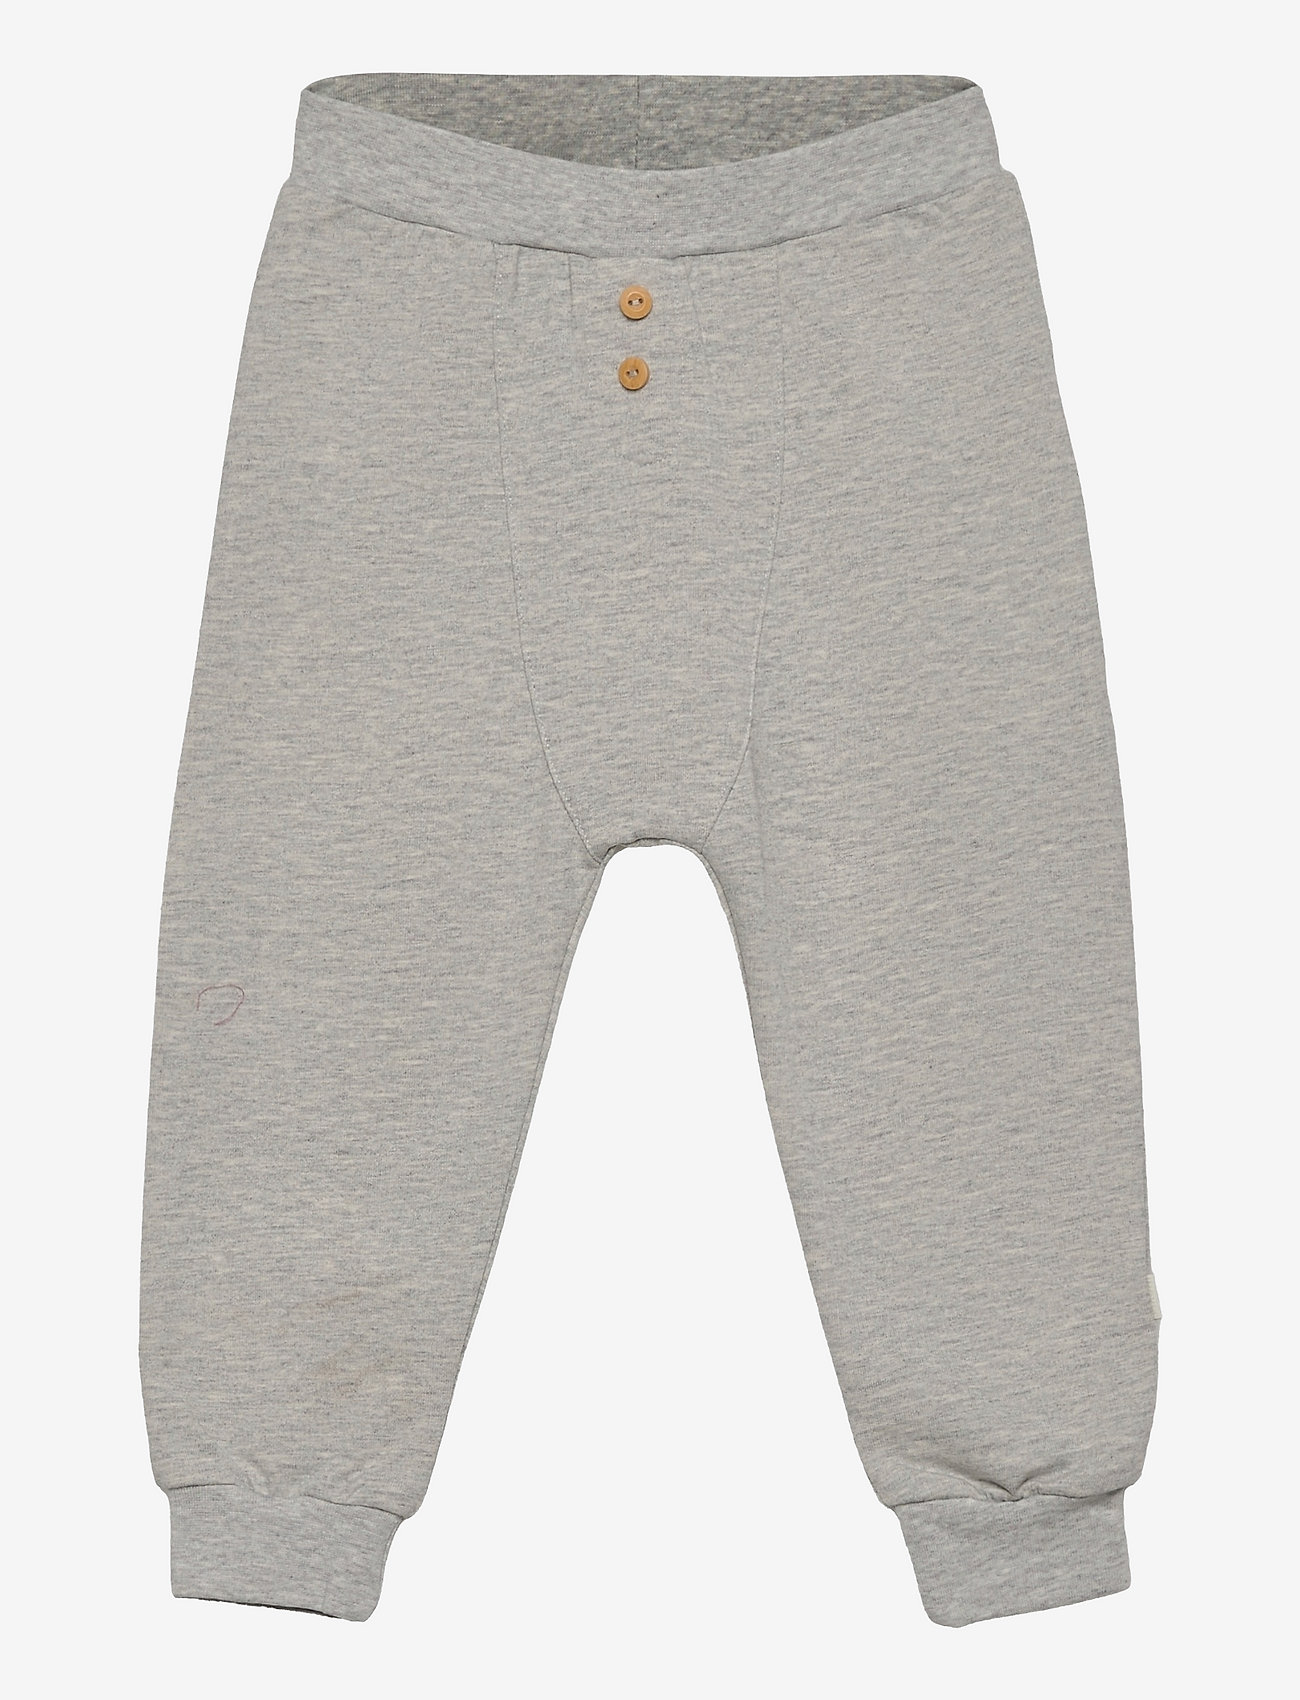 Fixoni - Pants - Unisex - baby trousers - grey melange - 0